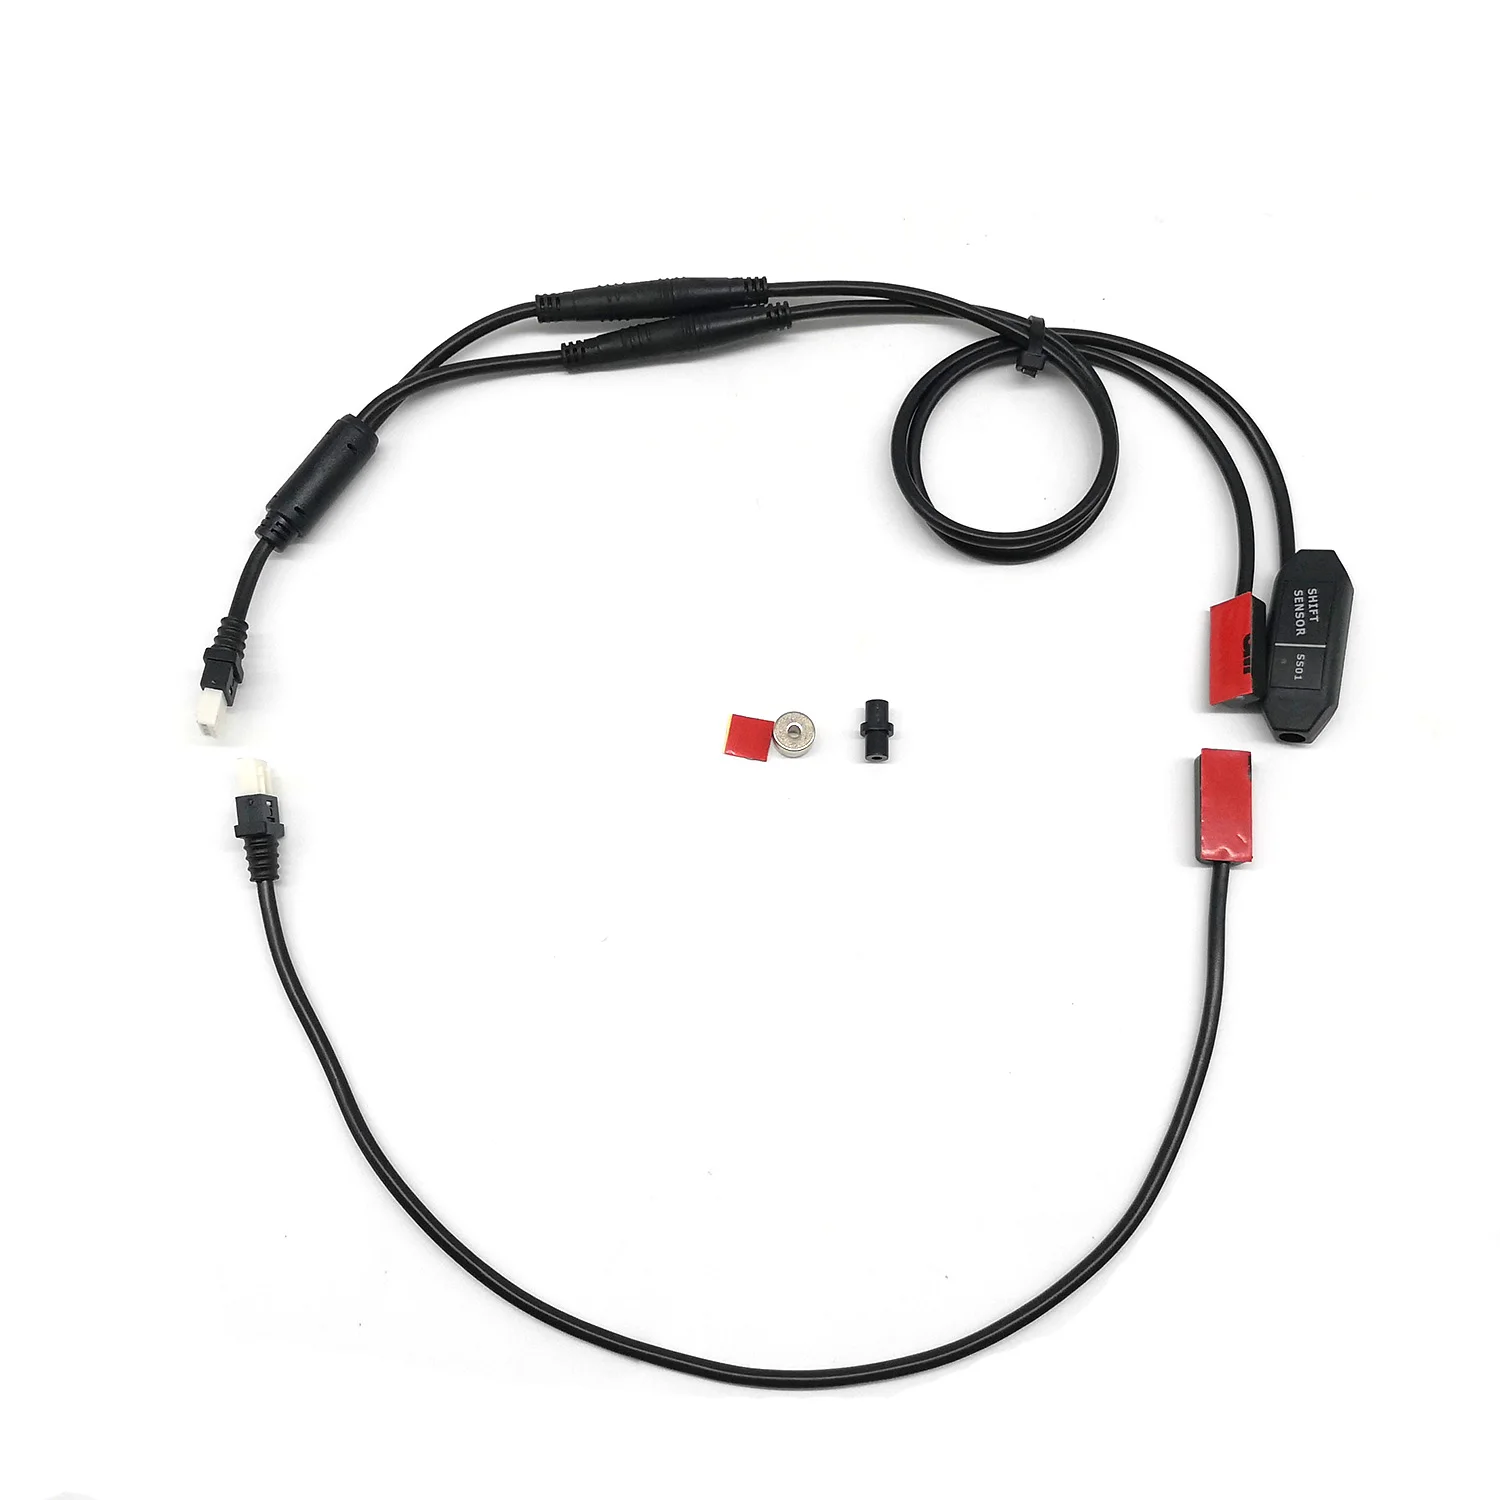 BOLLFIT TSDZ 2 Середина привода двигателя датчик переключения передач Датчик тормоза Электрический велосипед Замена датчика Y-SPLITTER 1T2 - Цвет: Gear Sensor Set